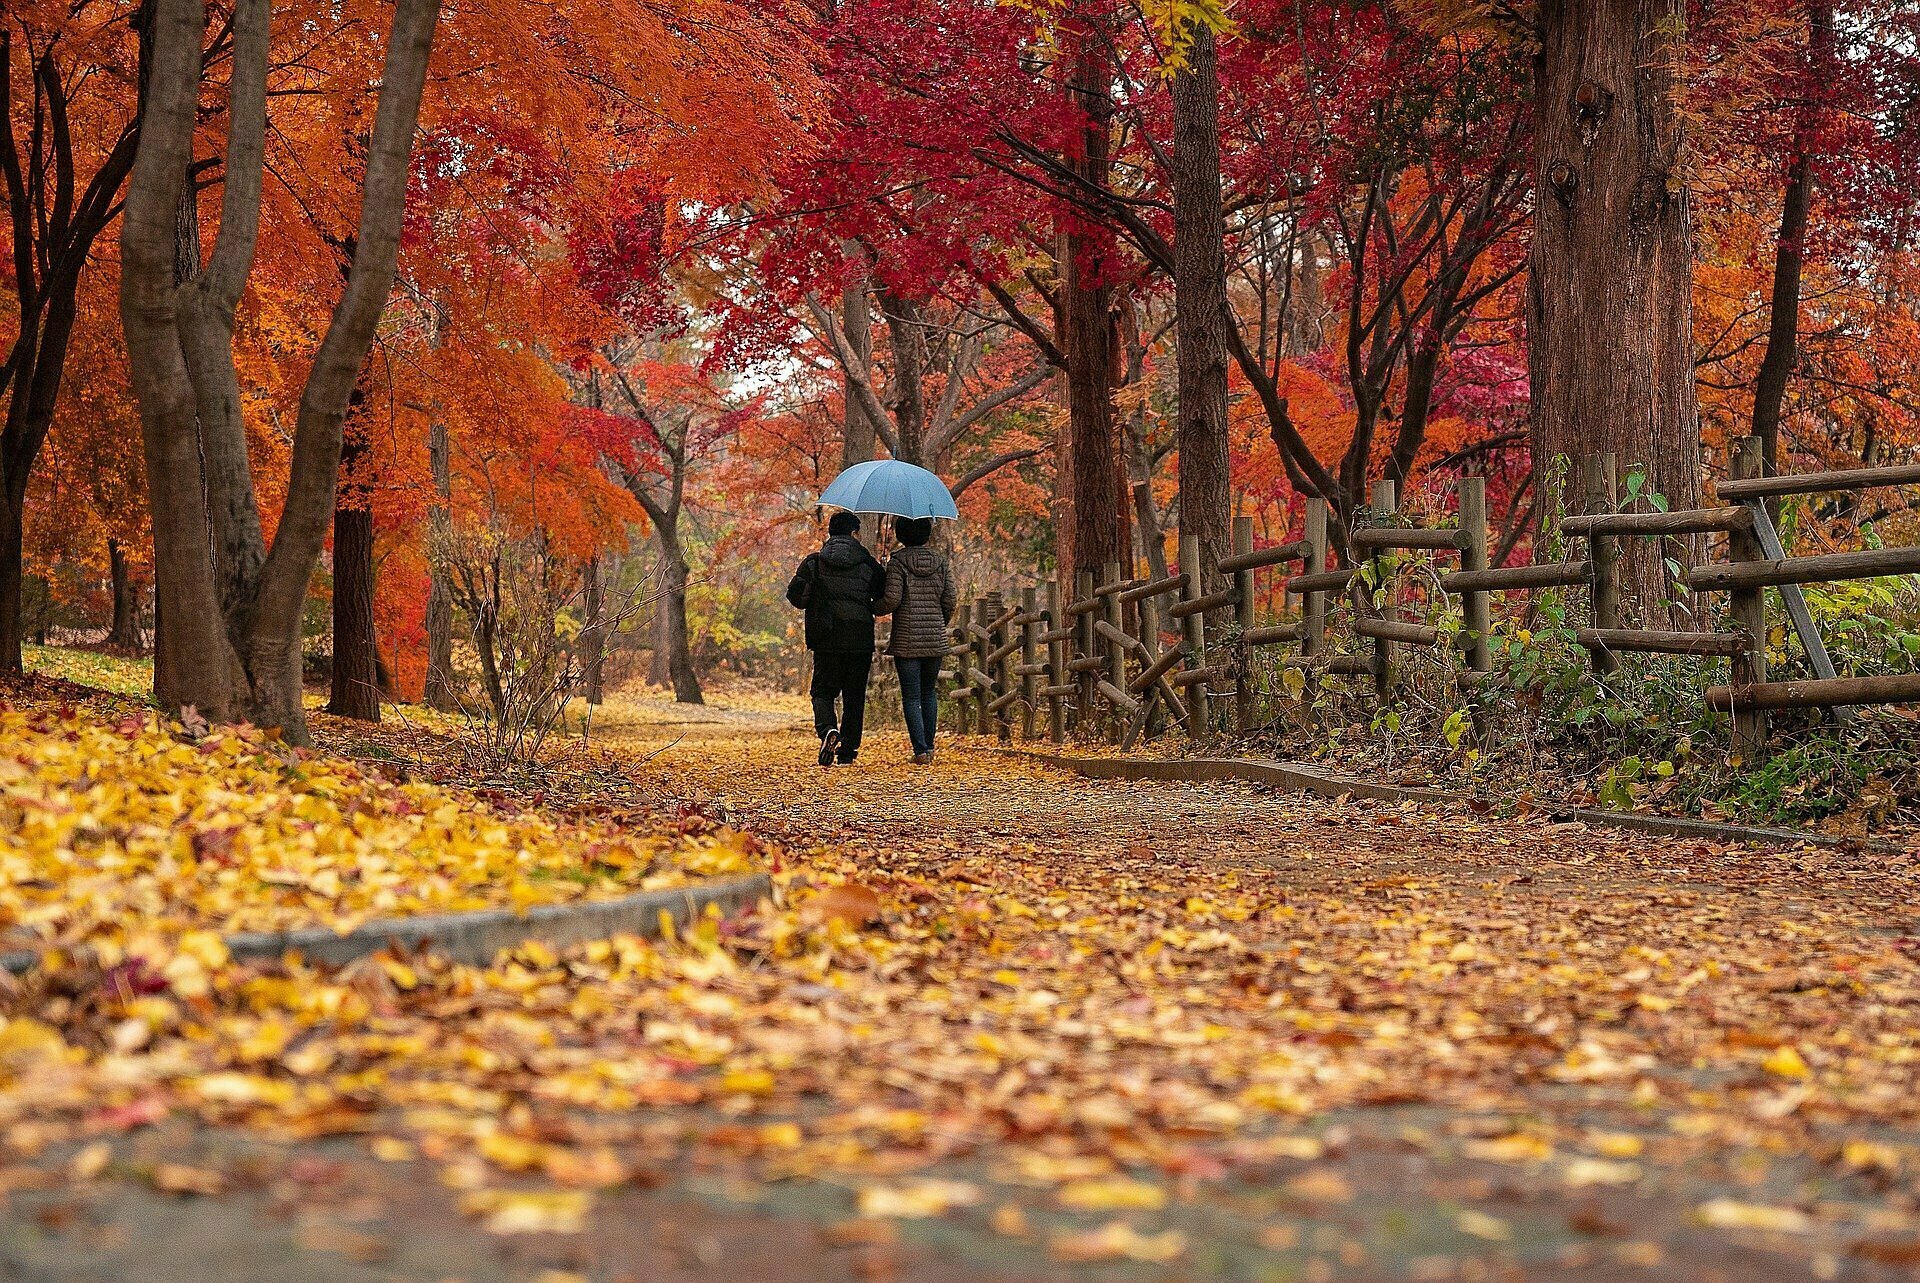 Herbstliche Atmosphäre: zwei Menschen spazieren mit einem Schirm unter rötlichen Bäumen